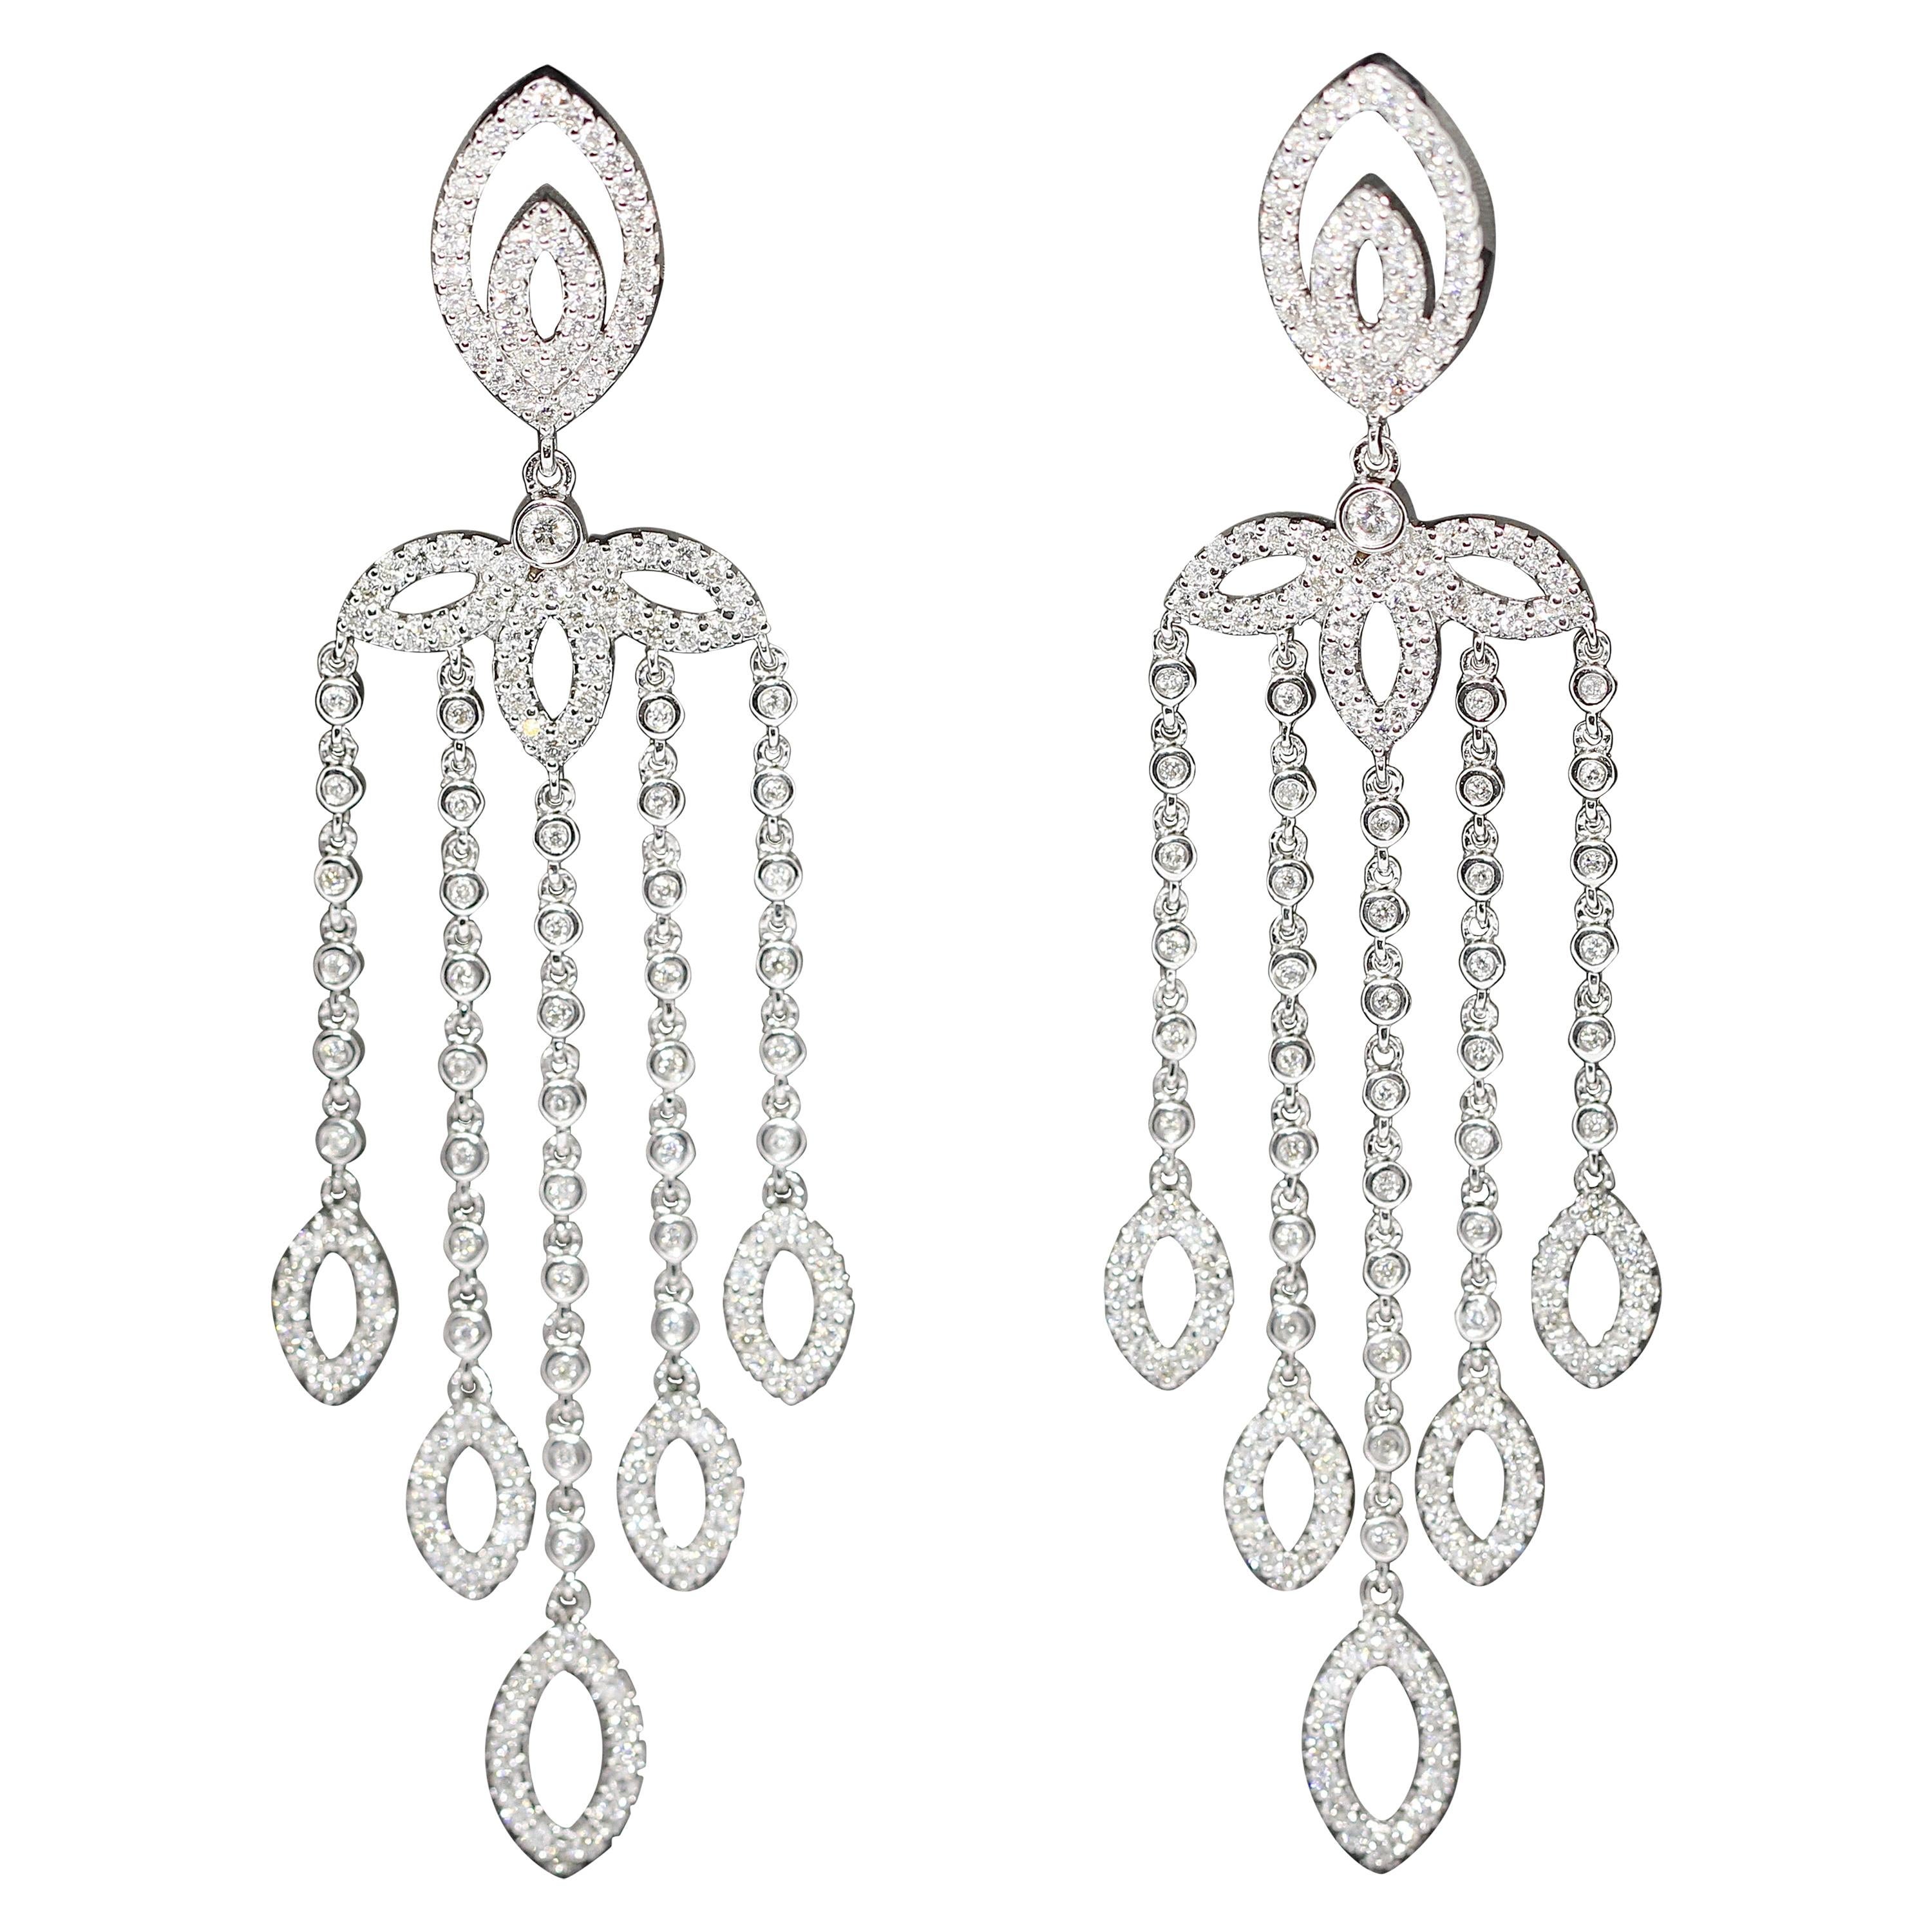 Pair of Ladies Diamonds Chandelier Earrings, 18 Karat White Gold